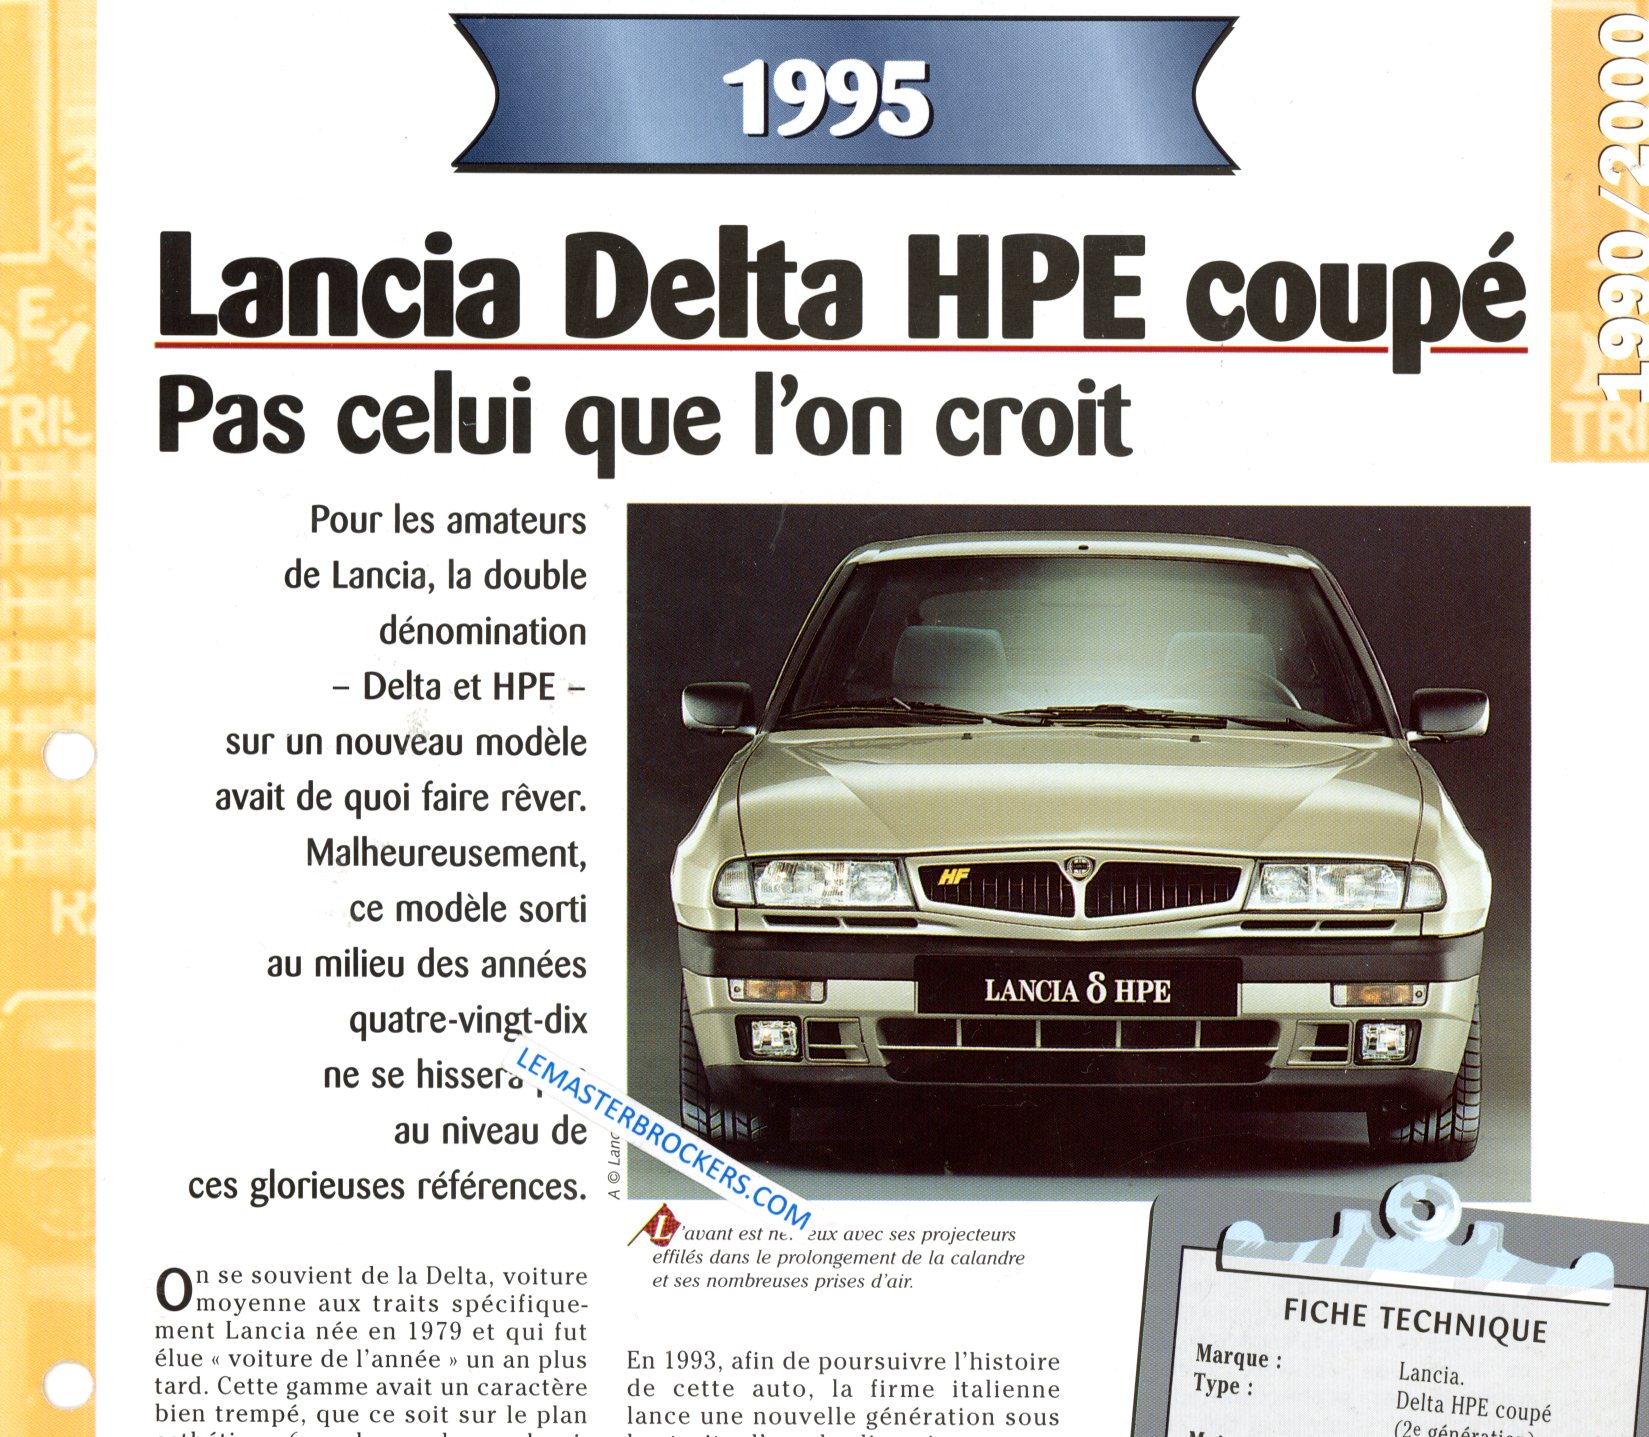 LANCIA DELTA HPE COUPE 1995 FICHE TECHNIQUE